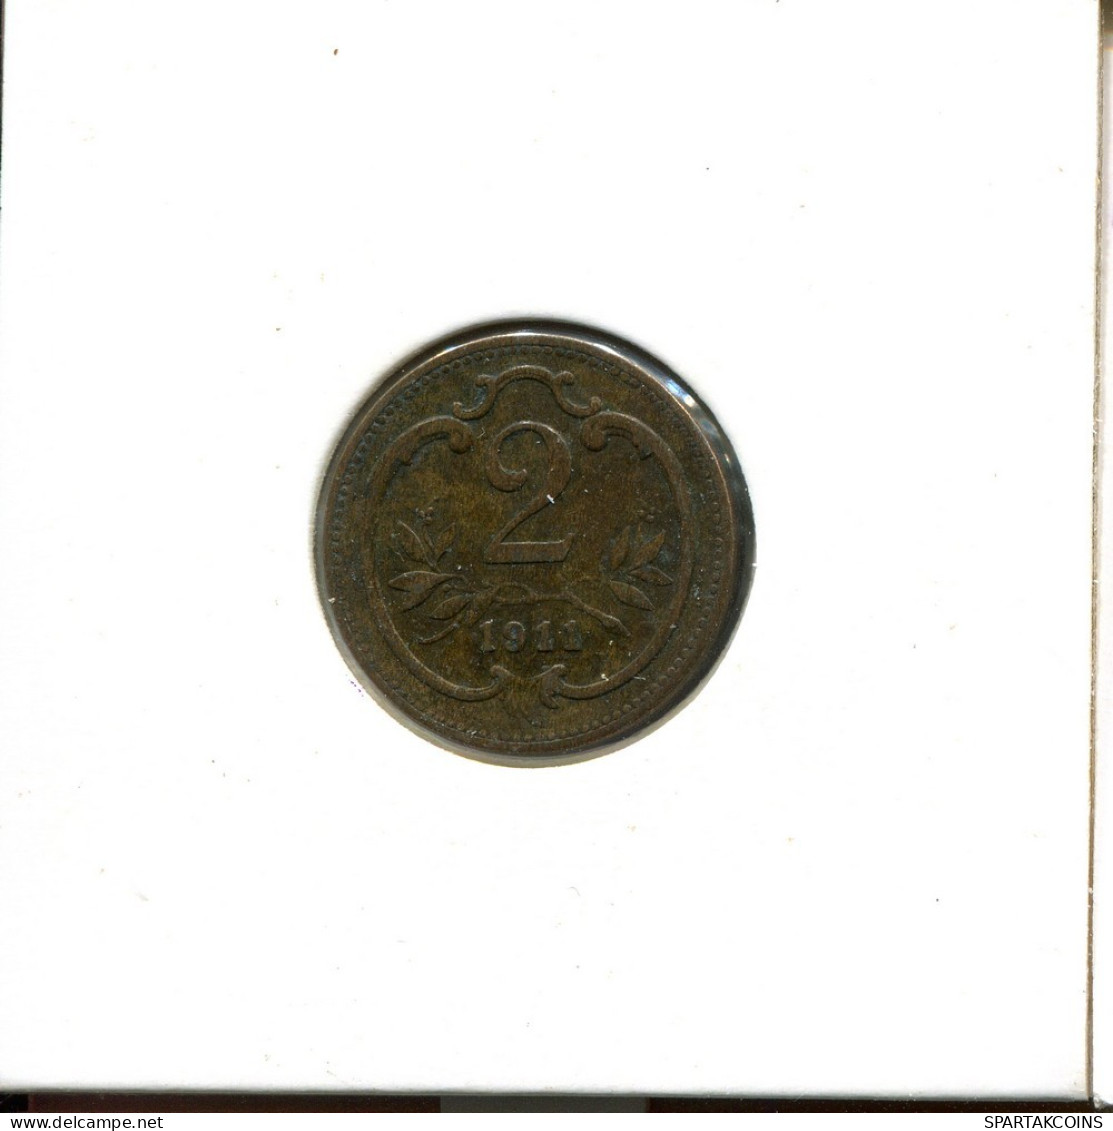 2 HELLER 1911 AUSTRIA Moneda #AT461.E.A - Oesterreich